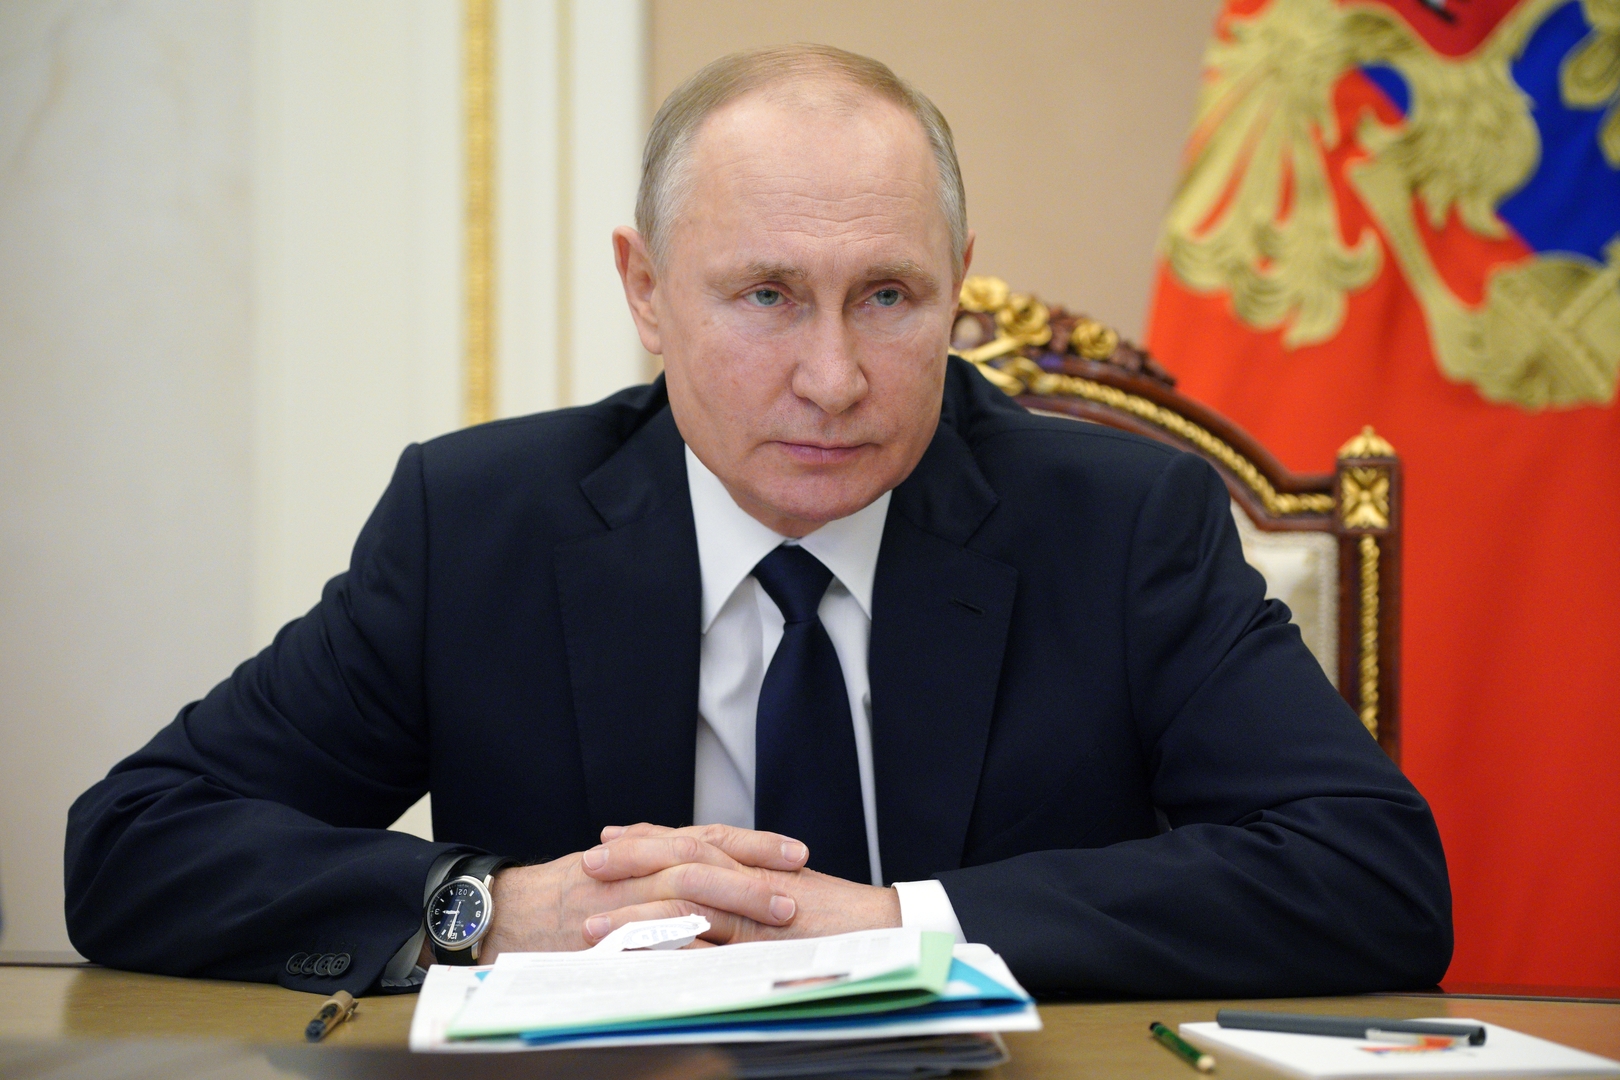 الكرملين يجيب عن سؤال حول المحادثة بين بوتين وعلييف